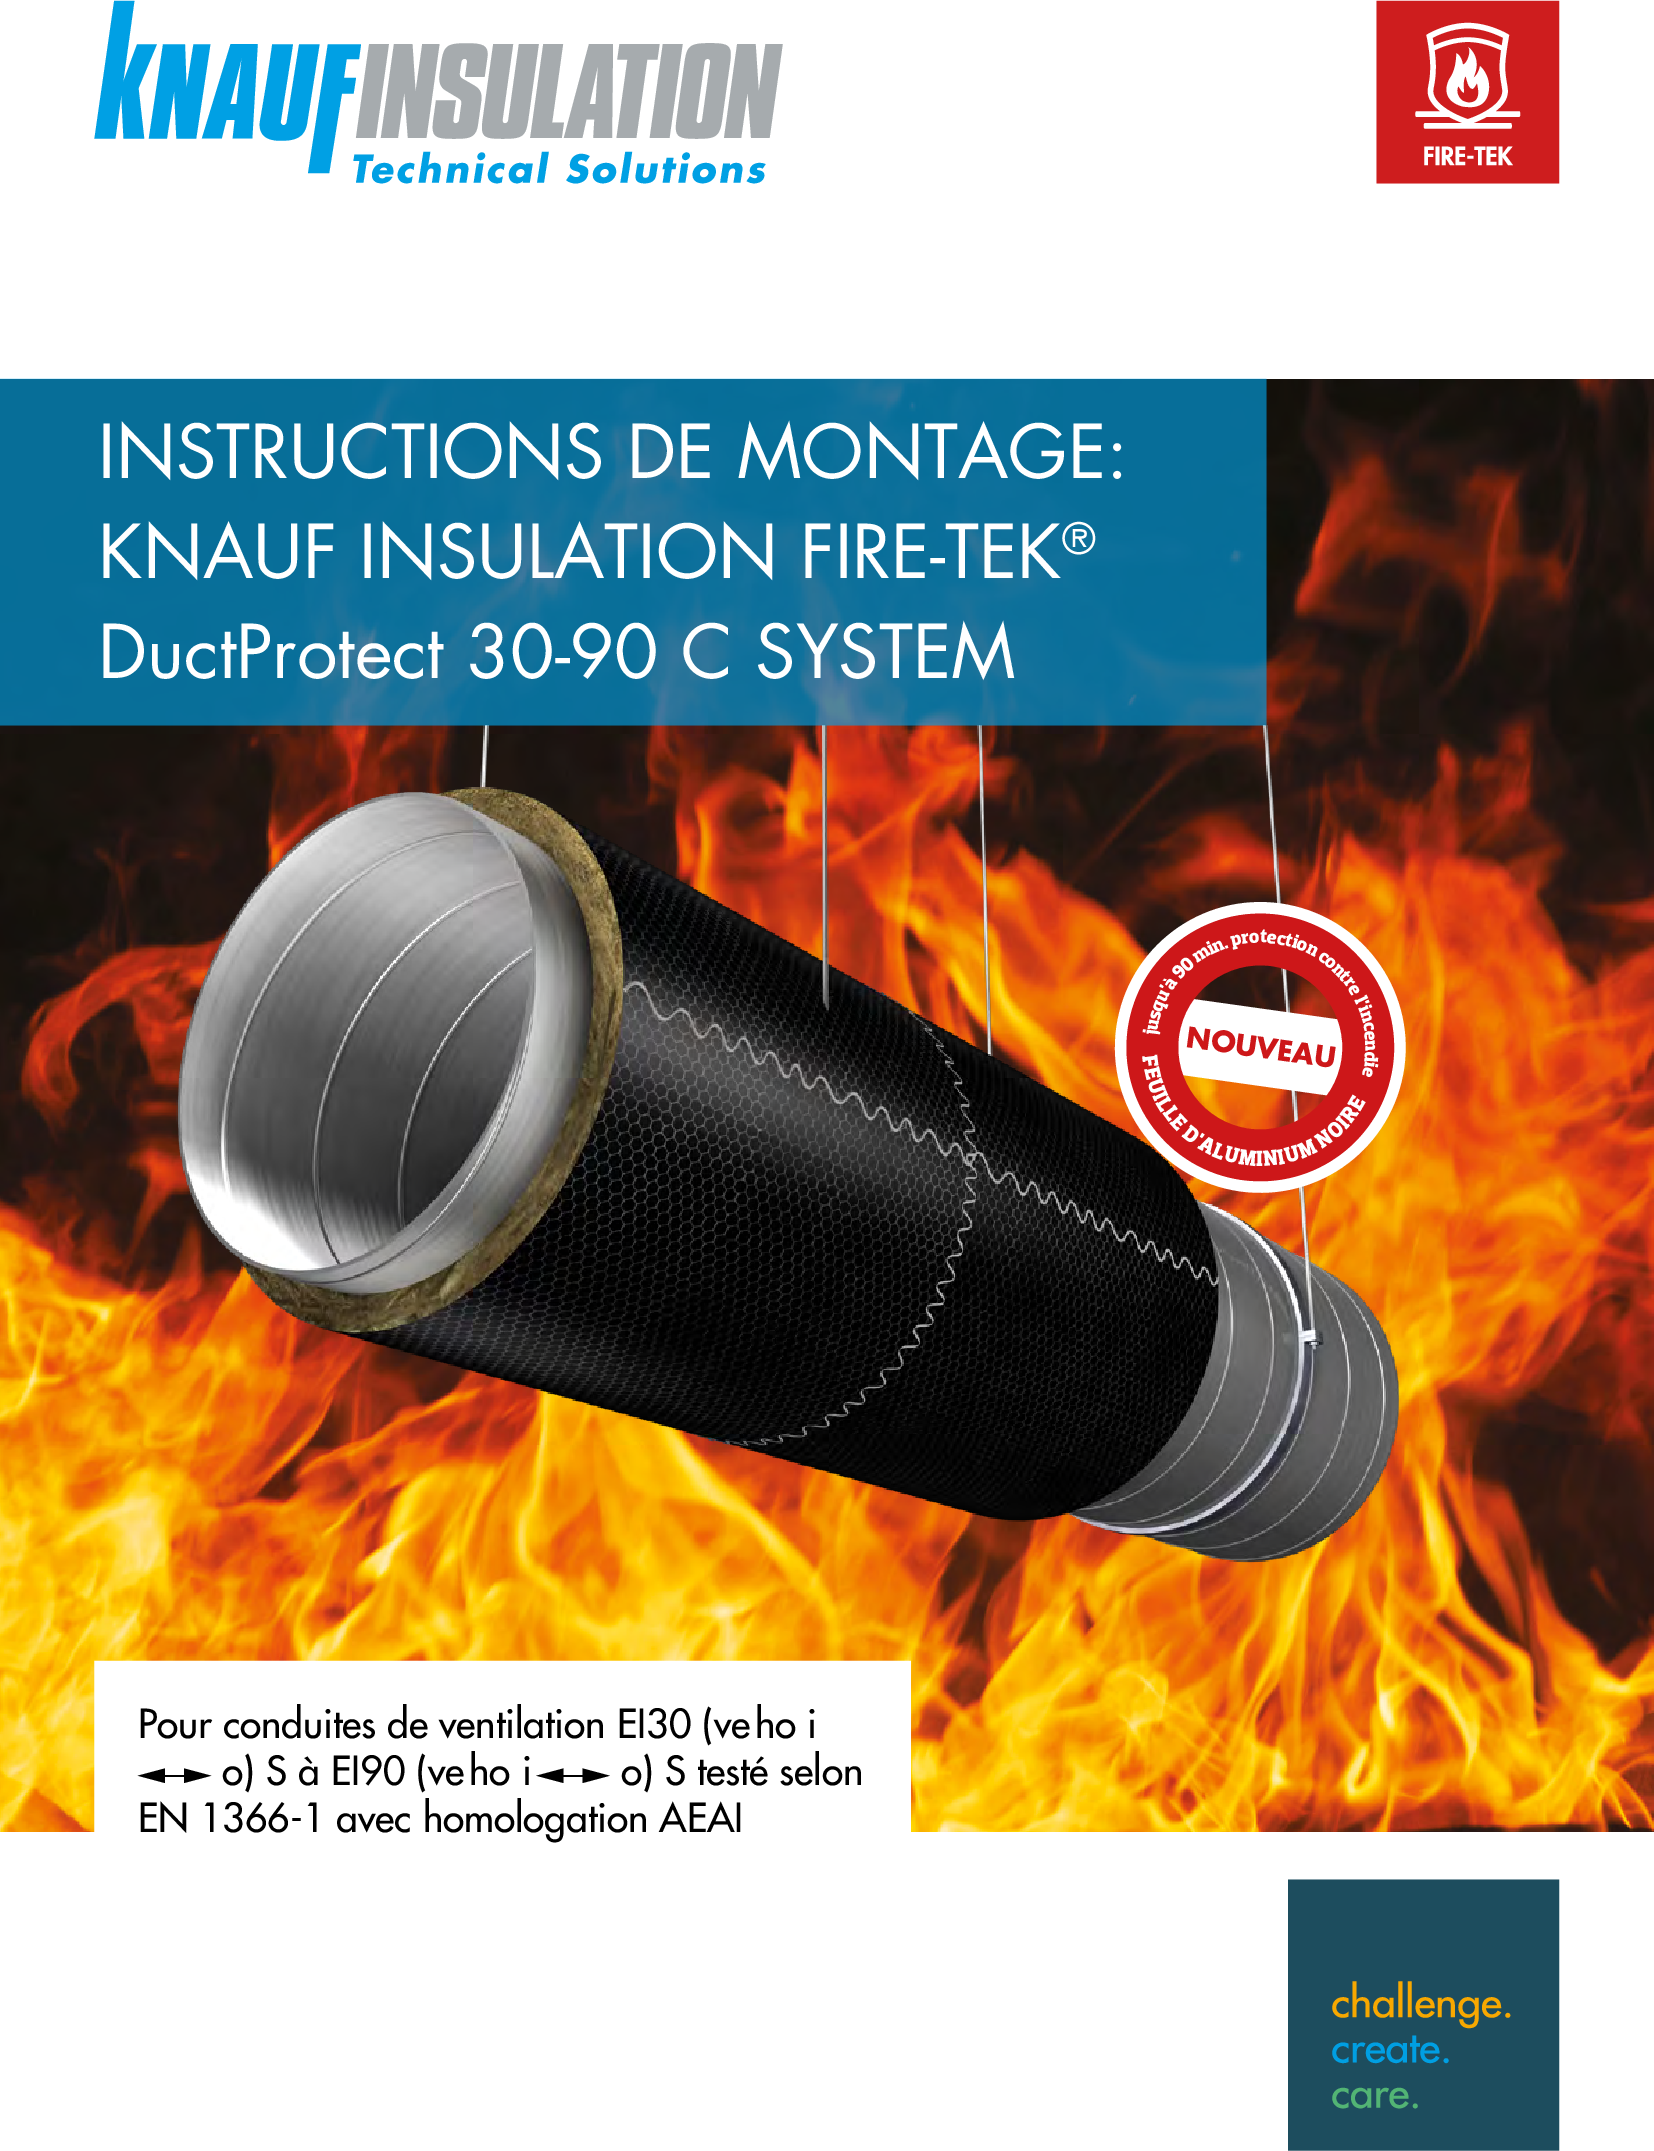 Fire-teK DuctProtect 30-90 C SYSTEM - MANUEL D’INSTALLATION (Suisse)